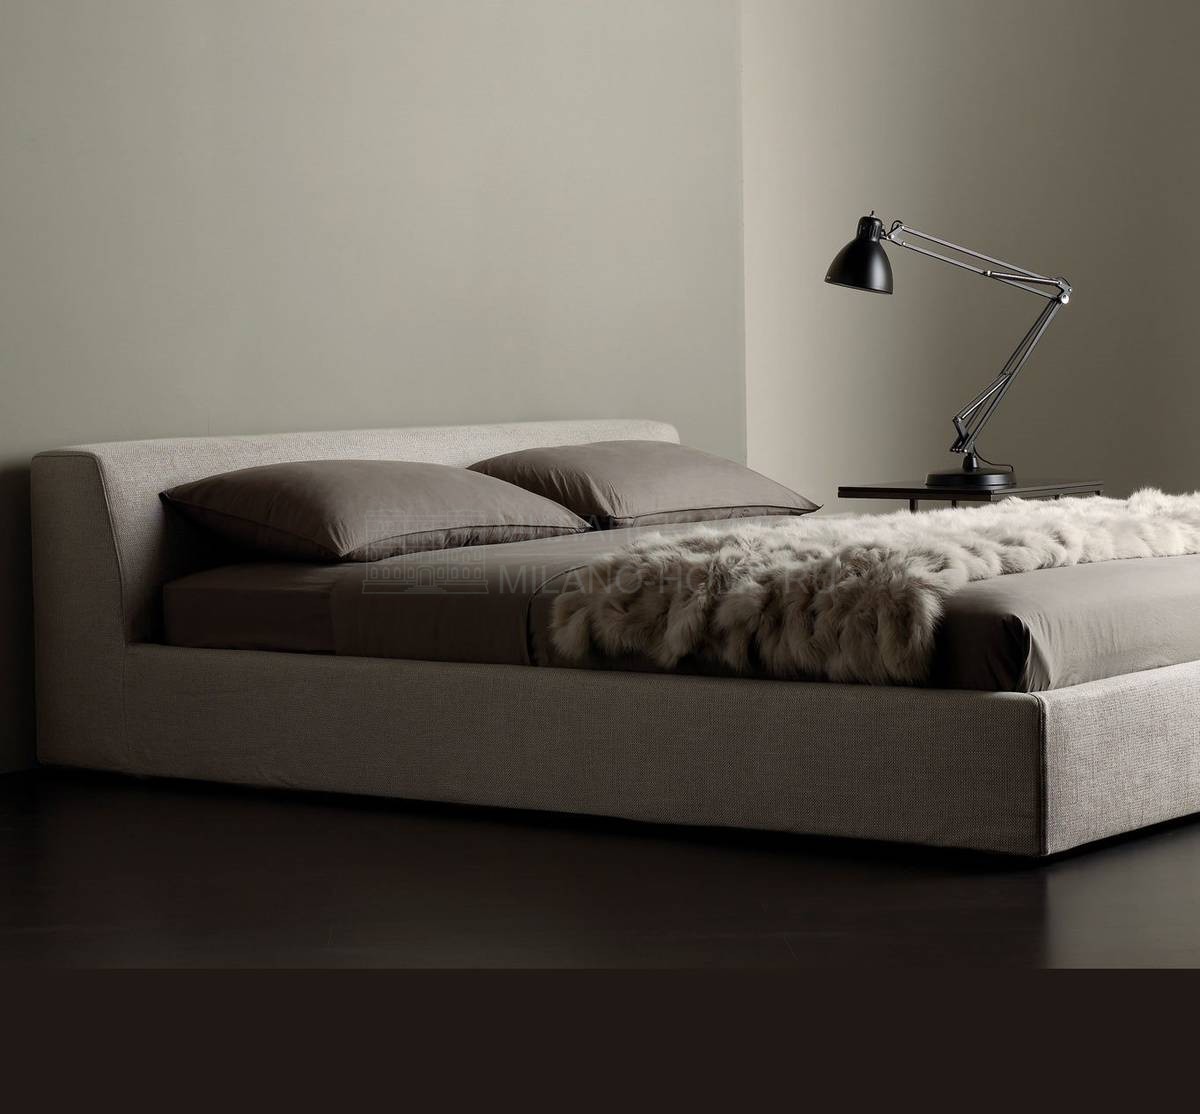 Кровать с мягким изголовьем Louis bed из Италии фабрики MERIDIANI